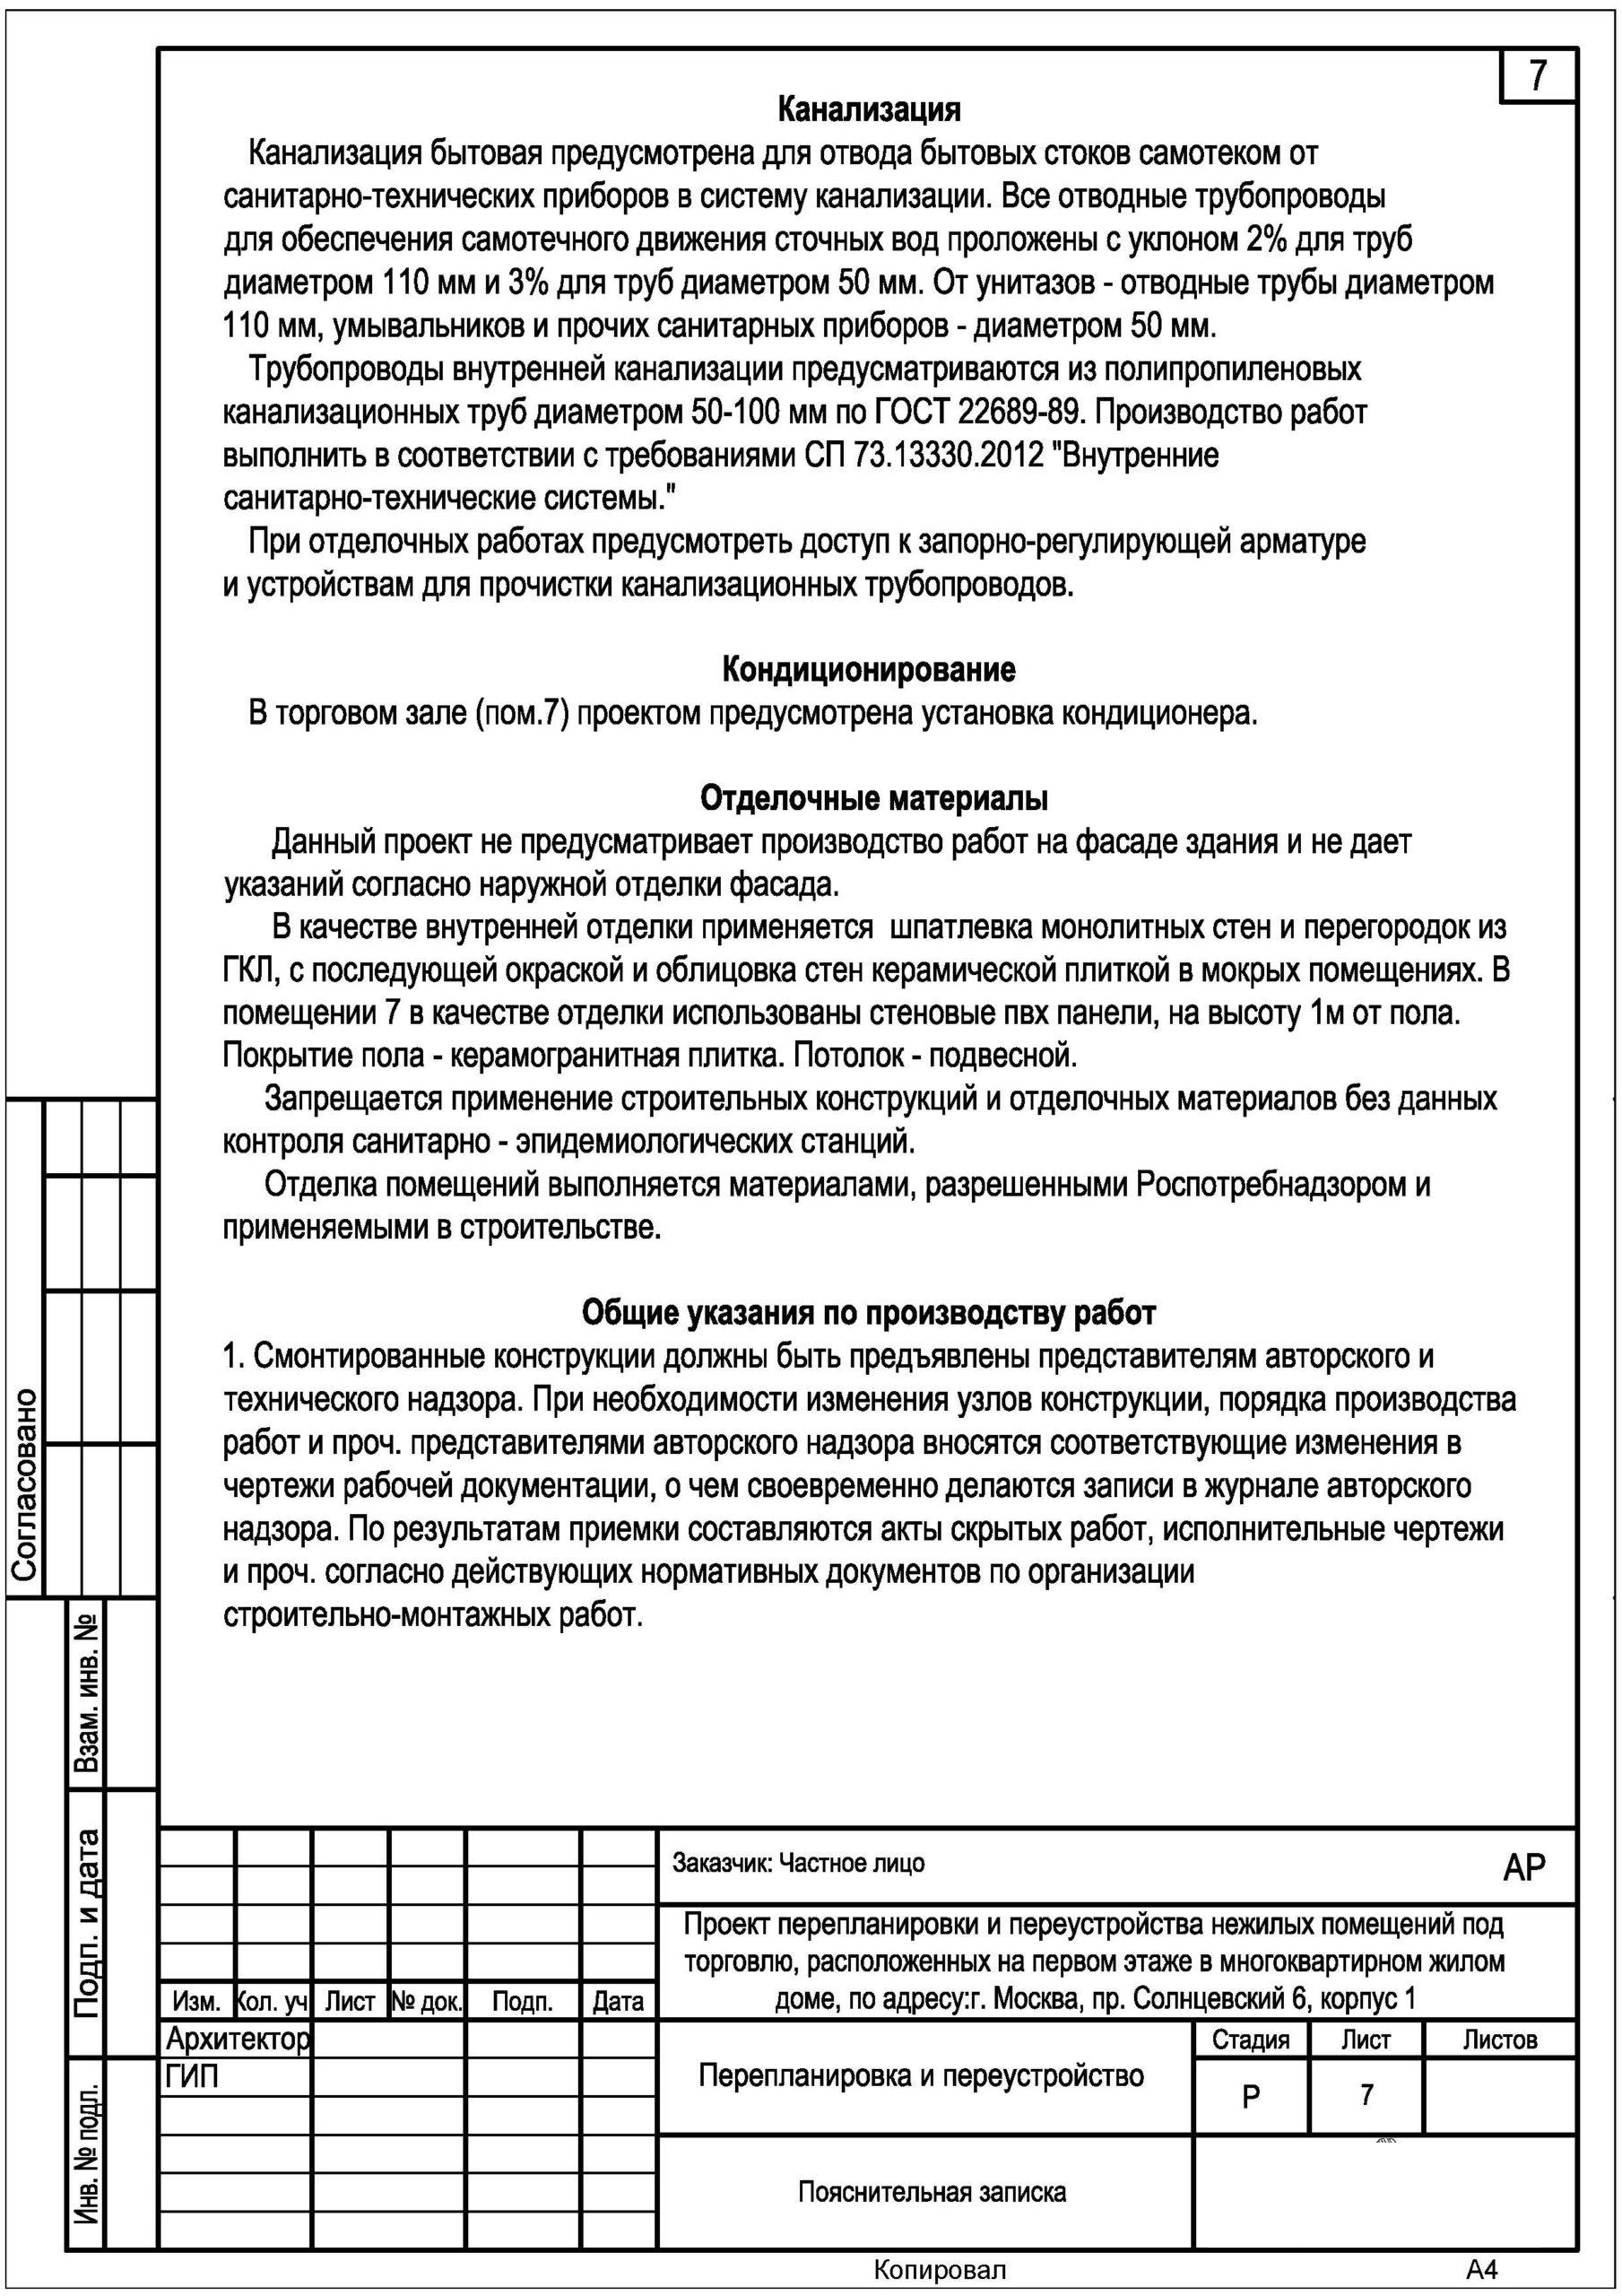 Проект перепланировки не нужен для узаконивания перепланировки в Москве. Однако для помещений в СПб этот документ нужно представить с заявлением на узаконивание.